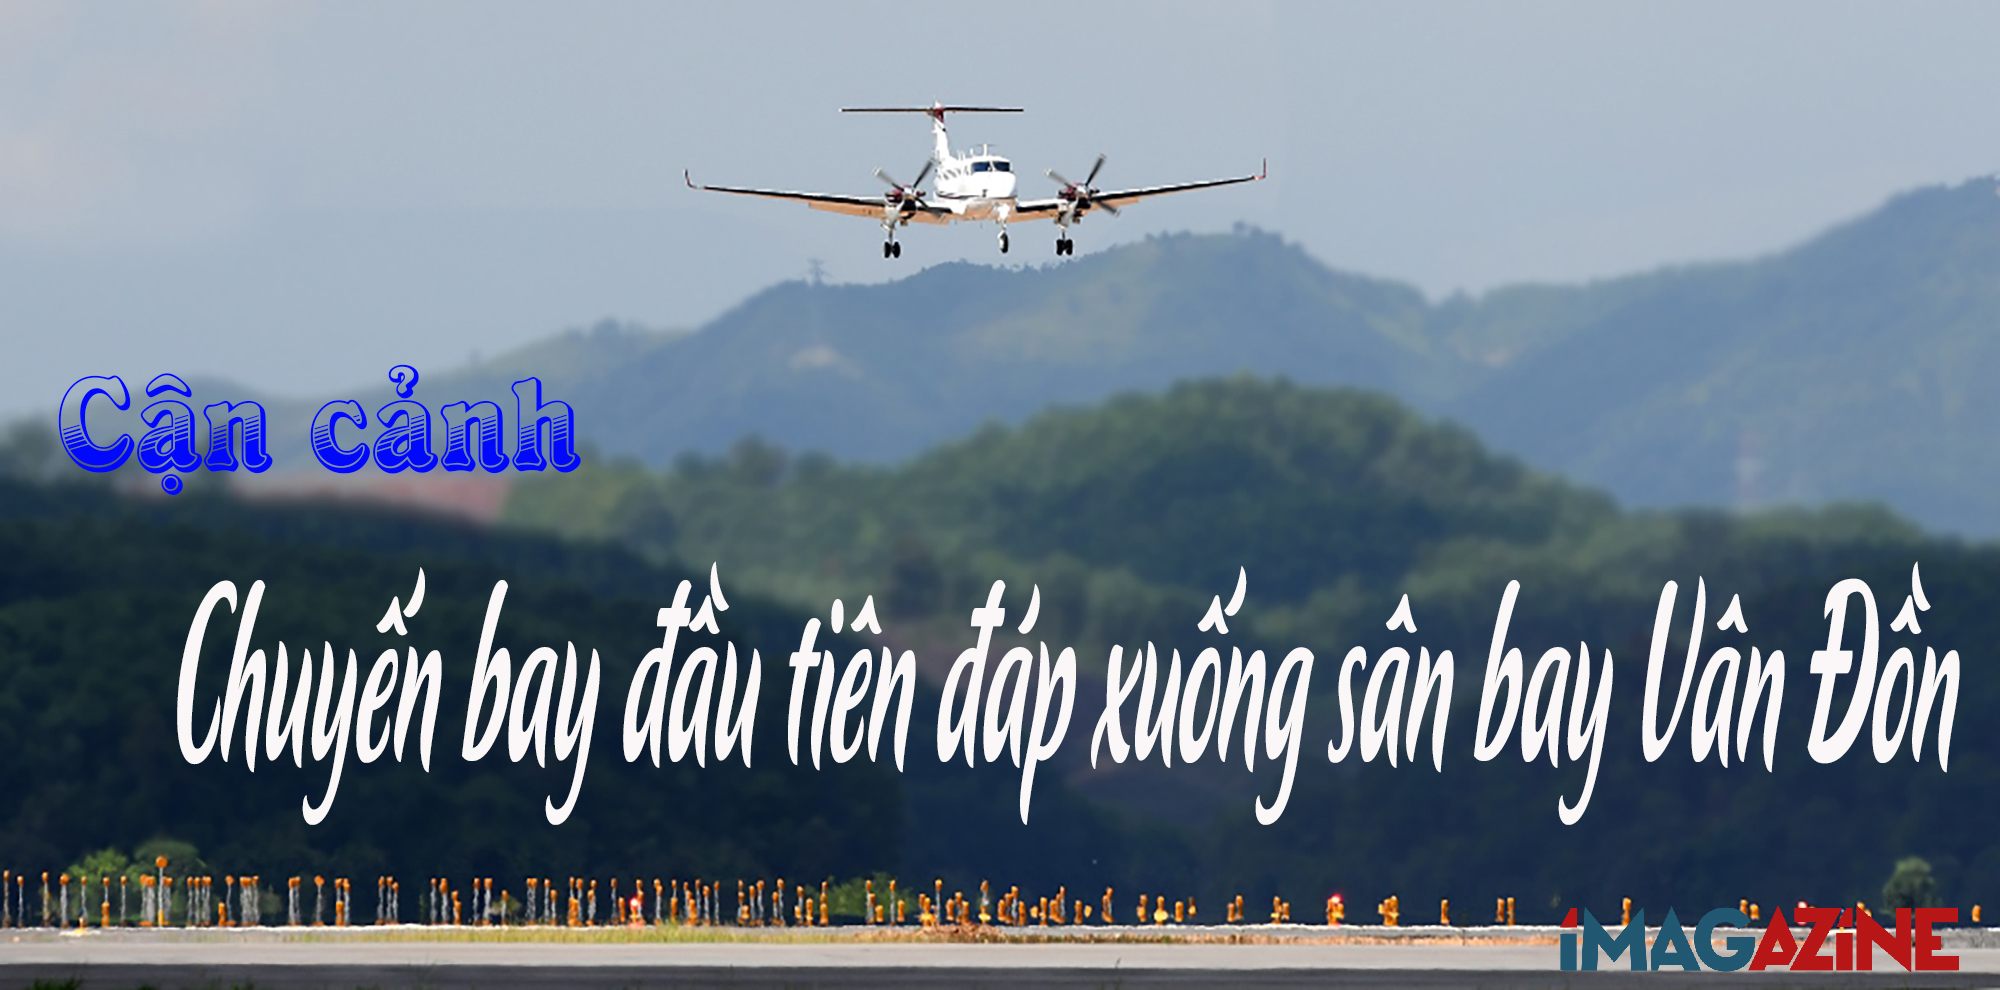 Cận cảnh: Chuyến bay đầu tiên đáp xuống sân bay Vân Đồn